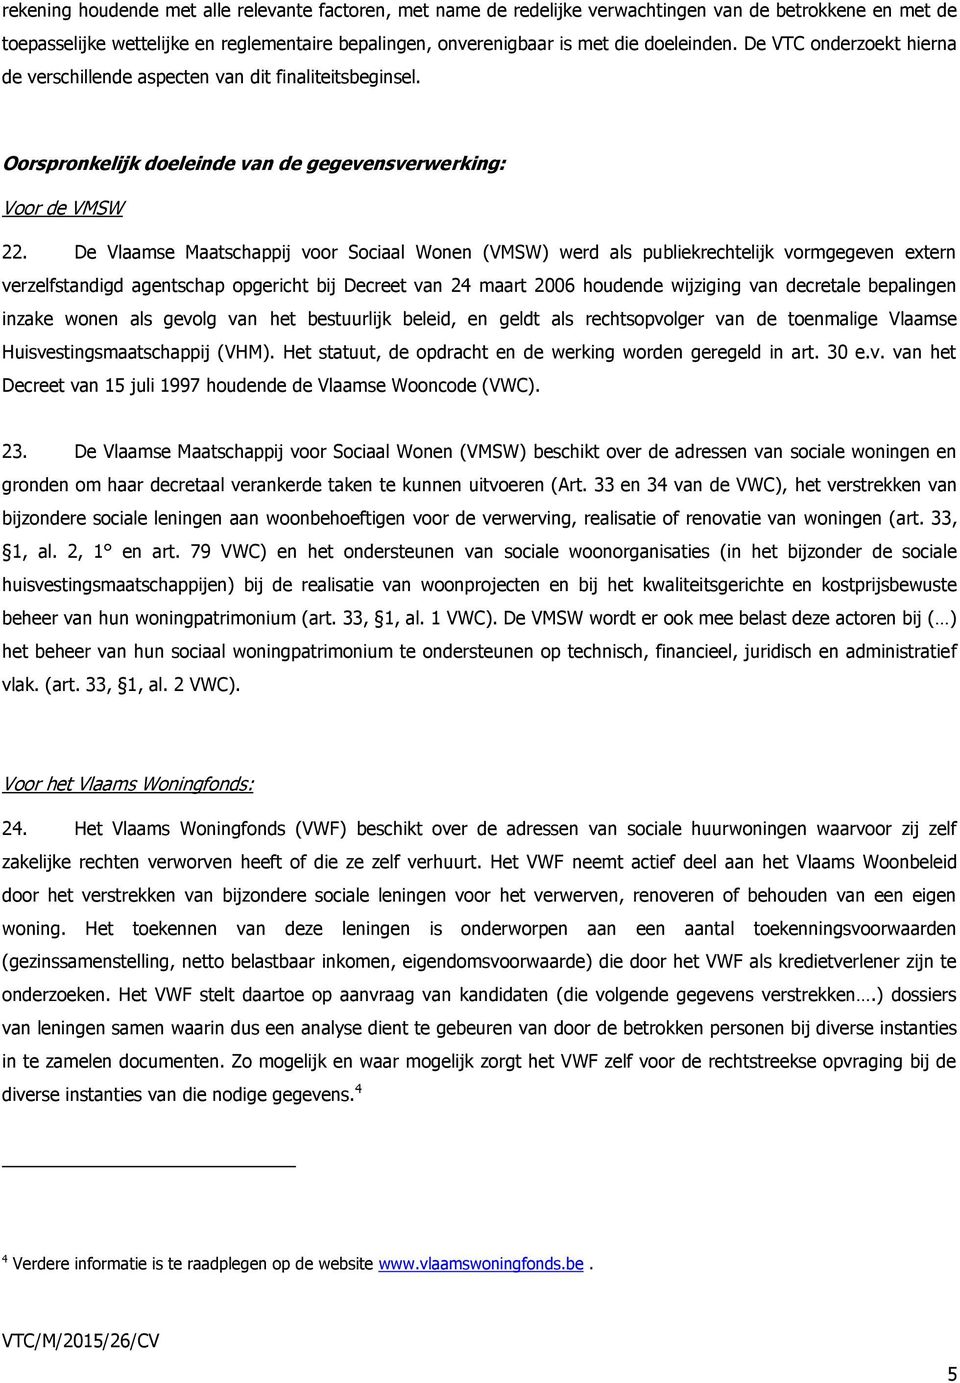 De Vlaamse Maatschappij voor Sociaal Wonen (VMSW) werd als publiekrechtelijk vormgegeven extern verzelfstandigd agentschap opgericht bij Decreet van 24 maart 2006 houdende wijziging van decretale